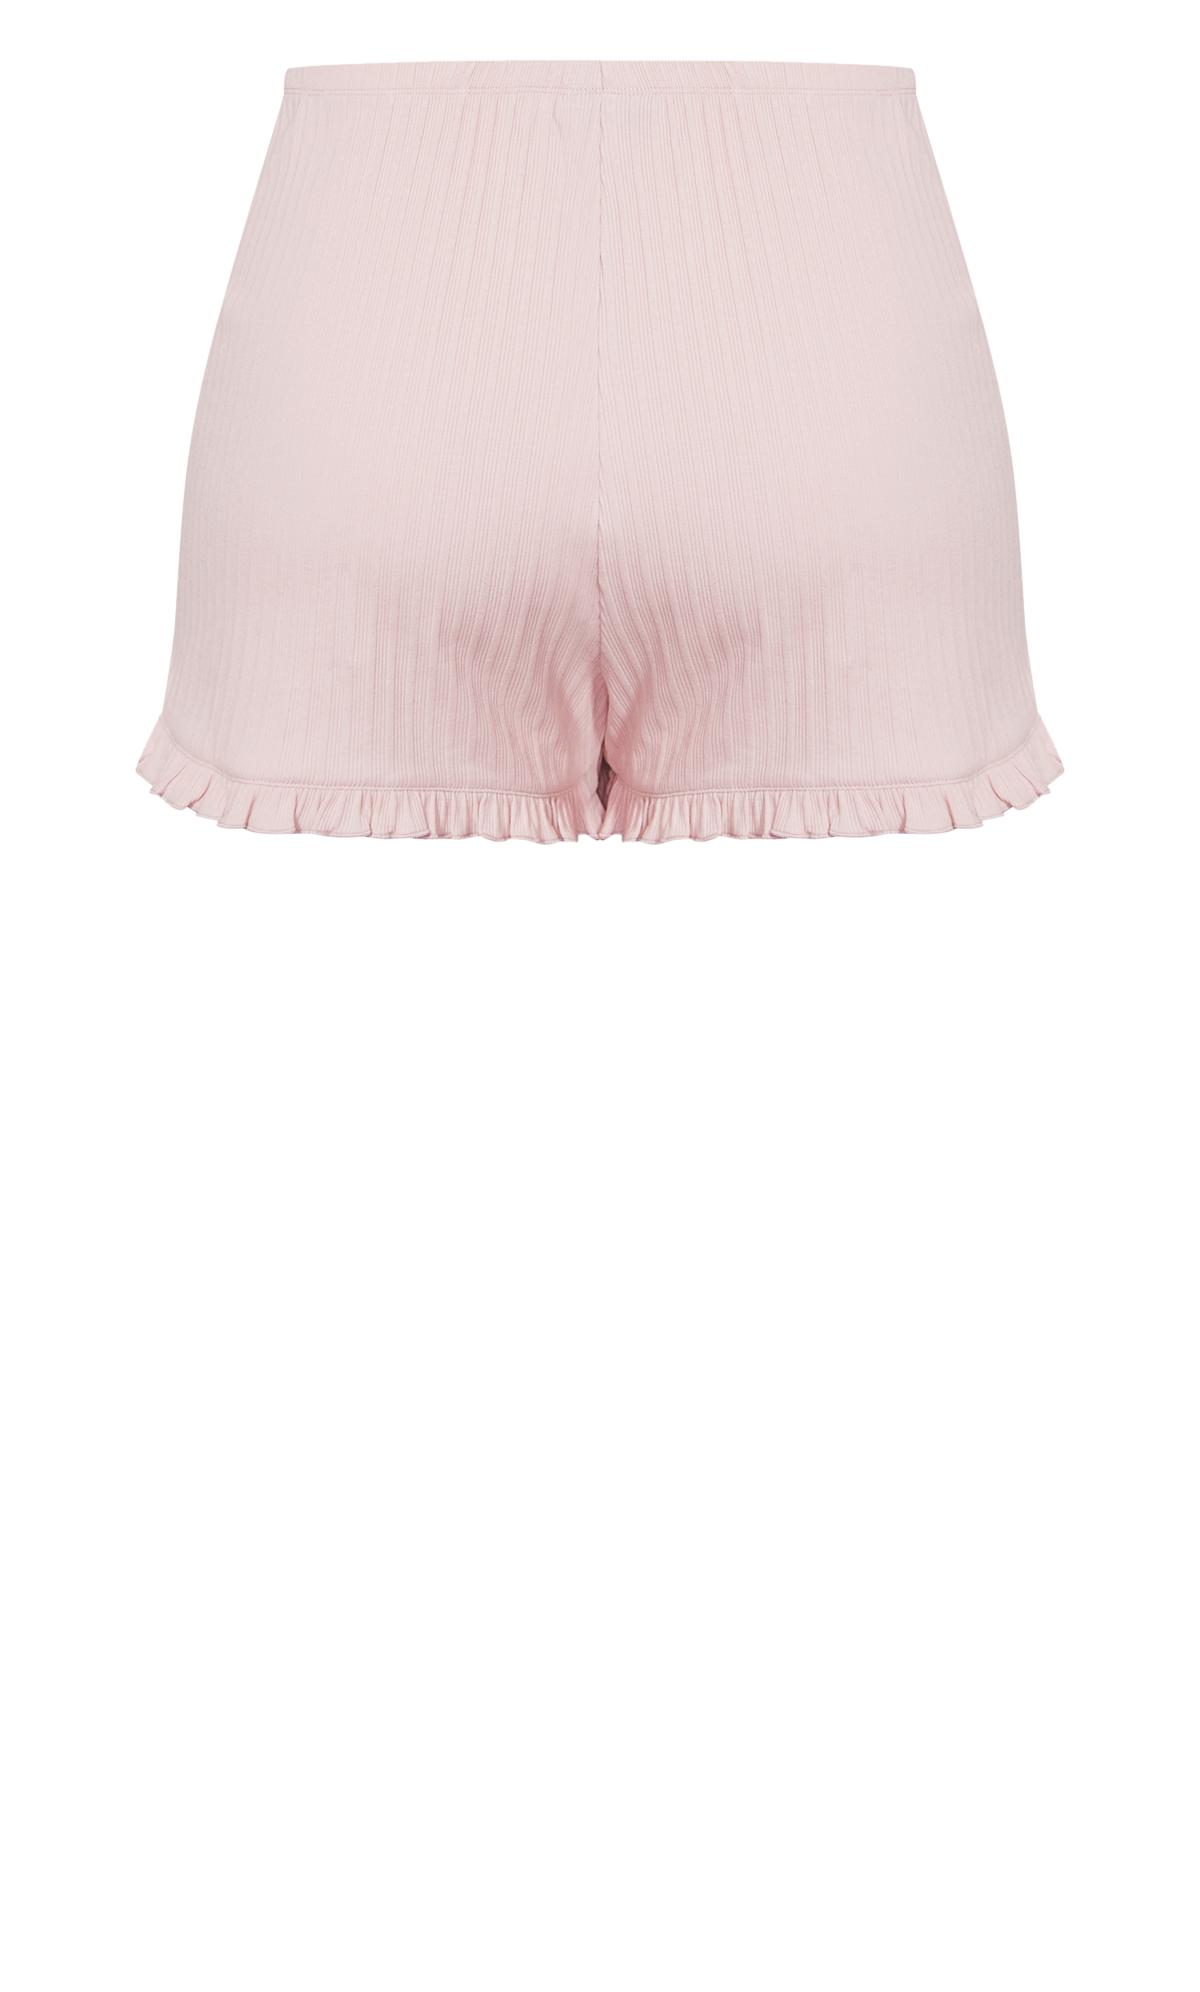 Ribbed Pink Frill Shorts 3